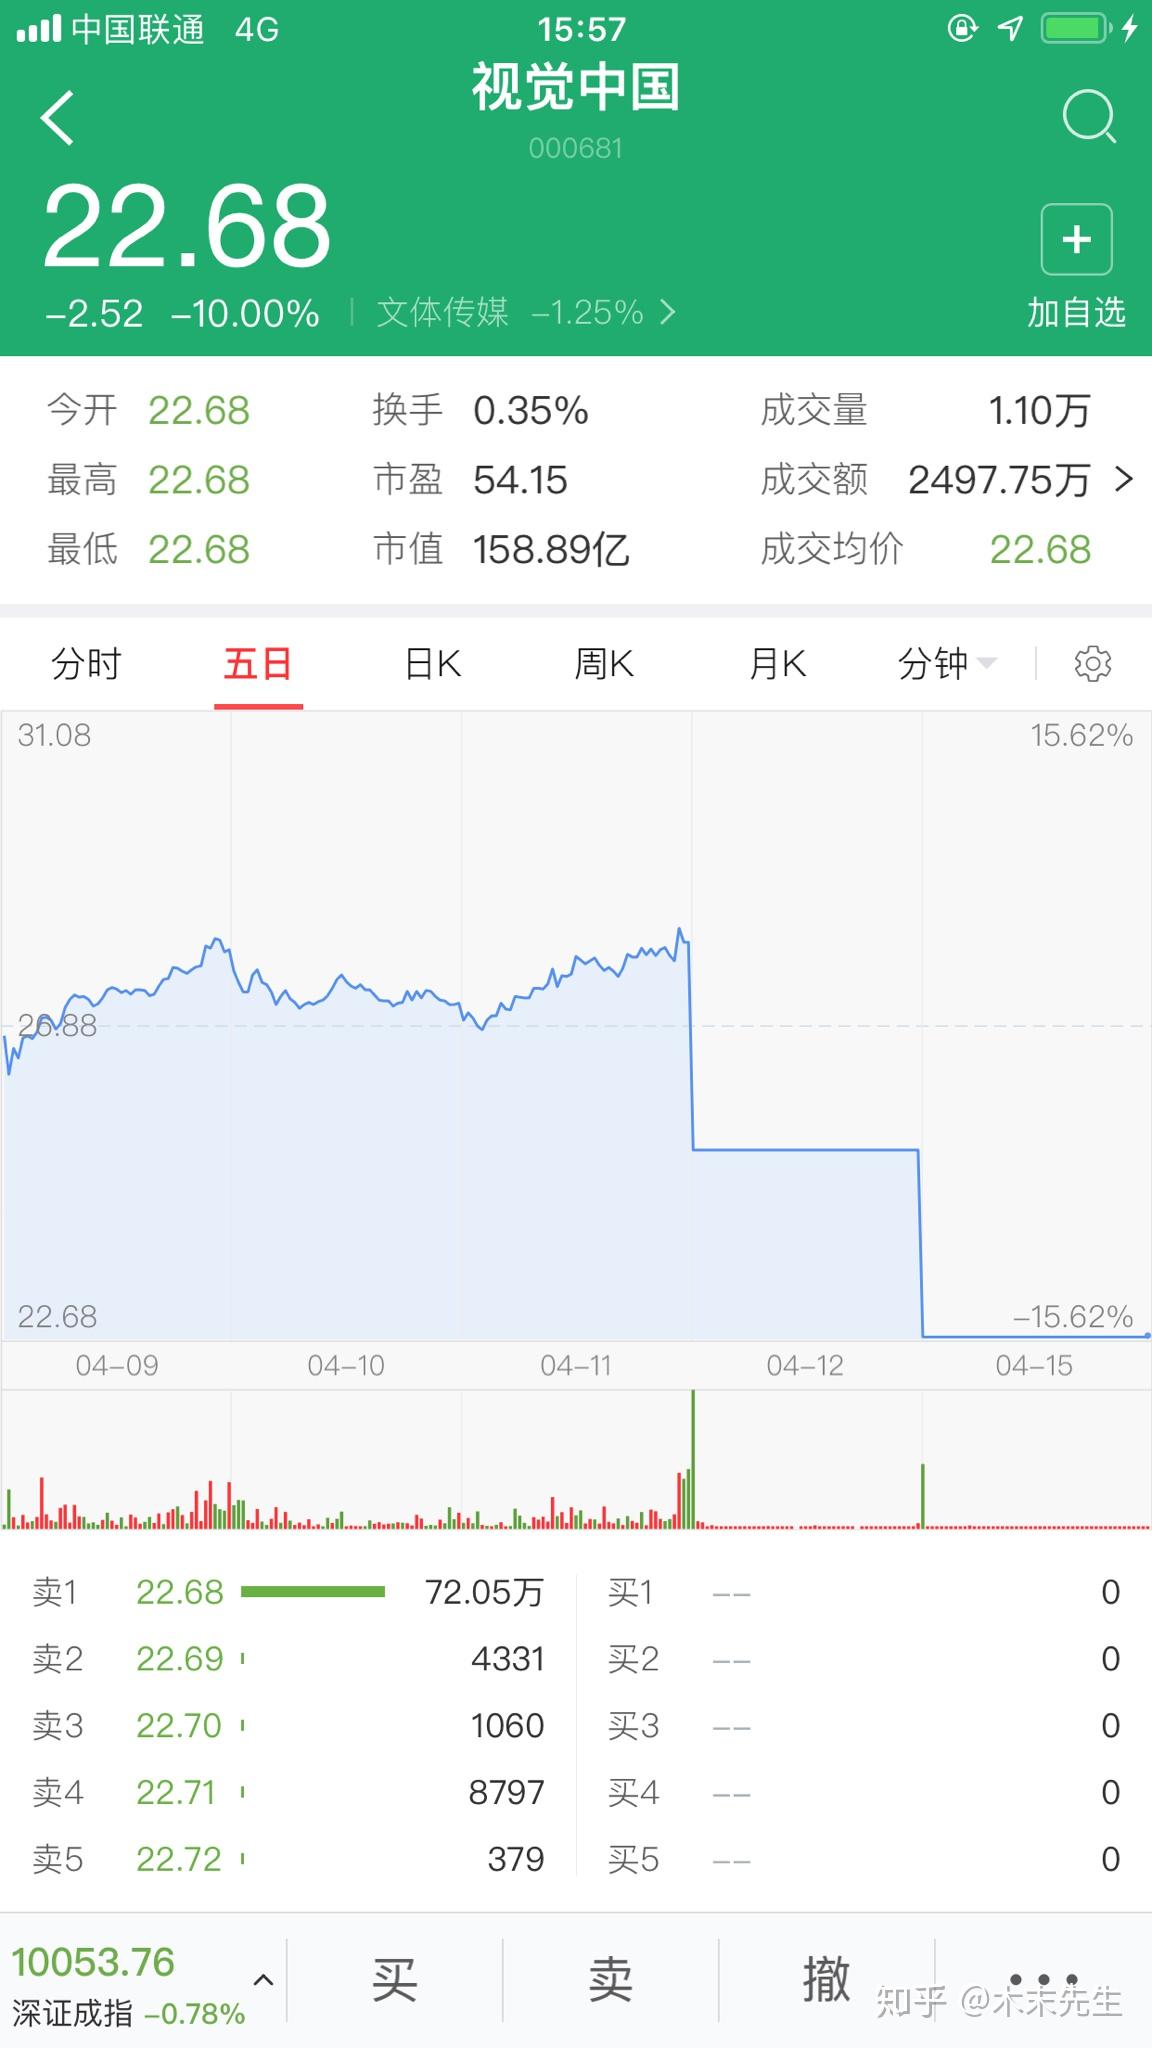 何看待黑洞照片版权事件后视觉中国股票跌停?